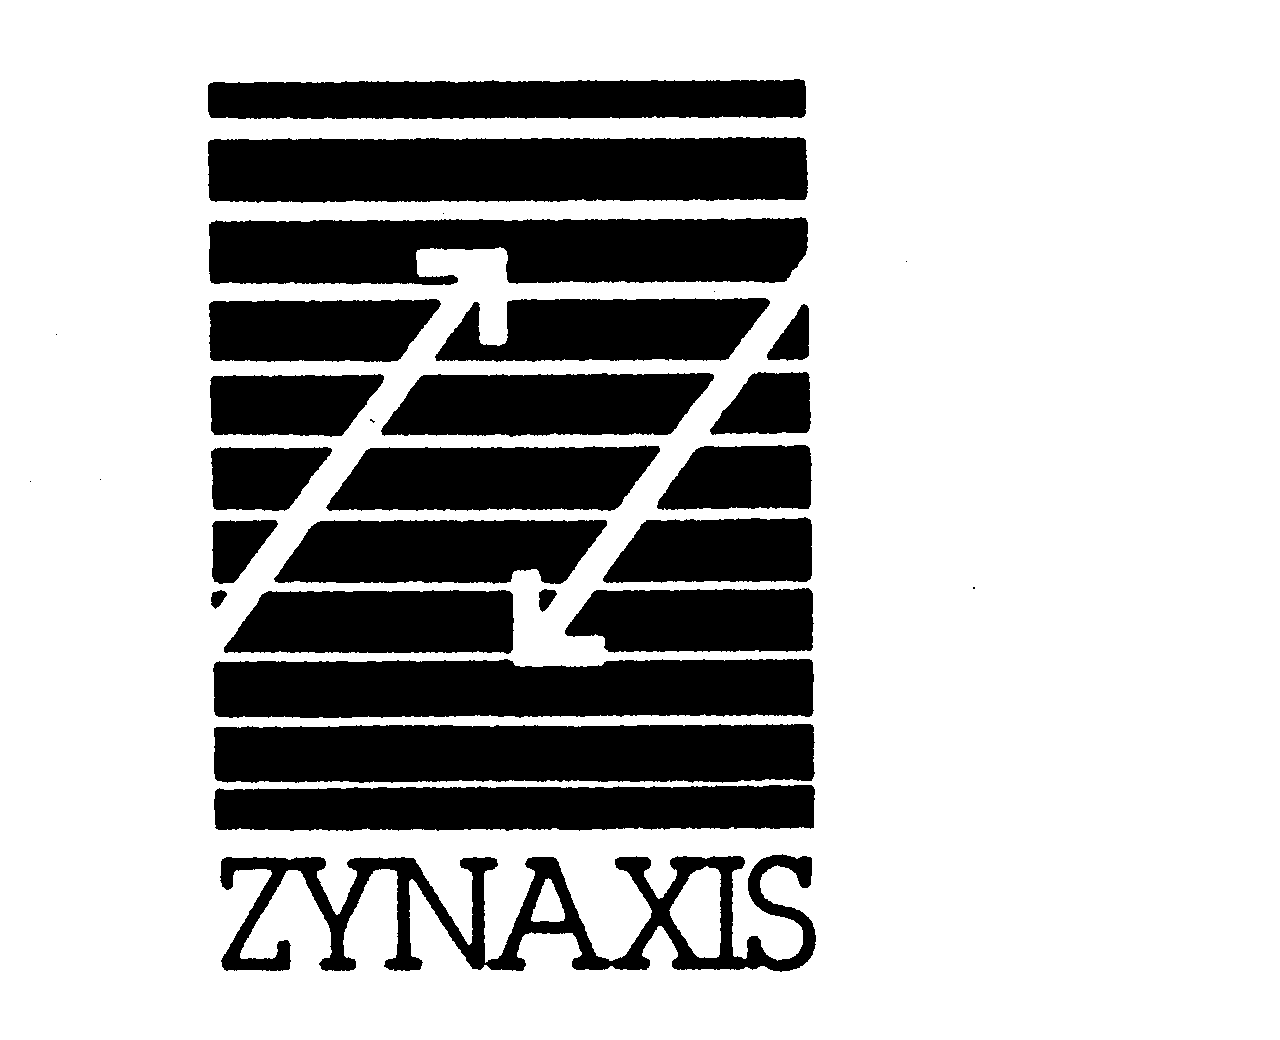  ZYNAXIS